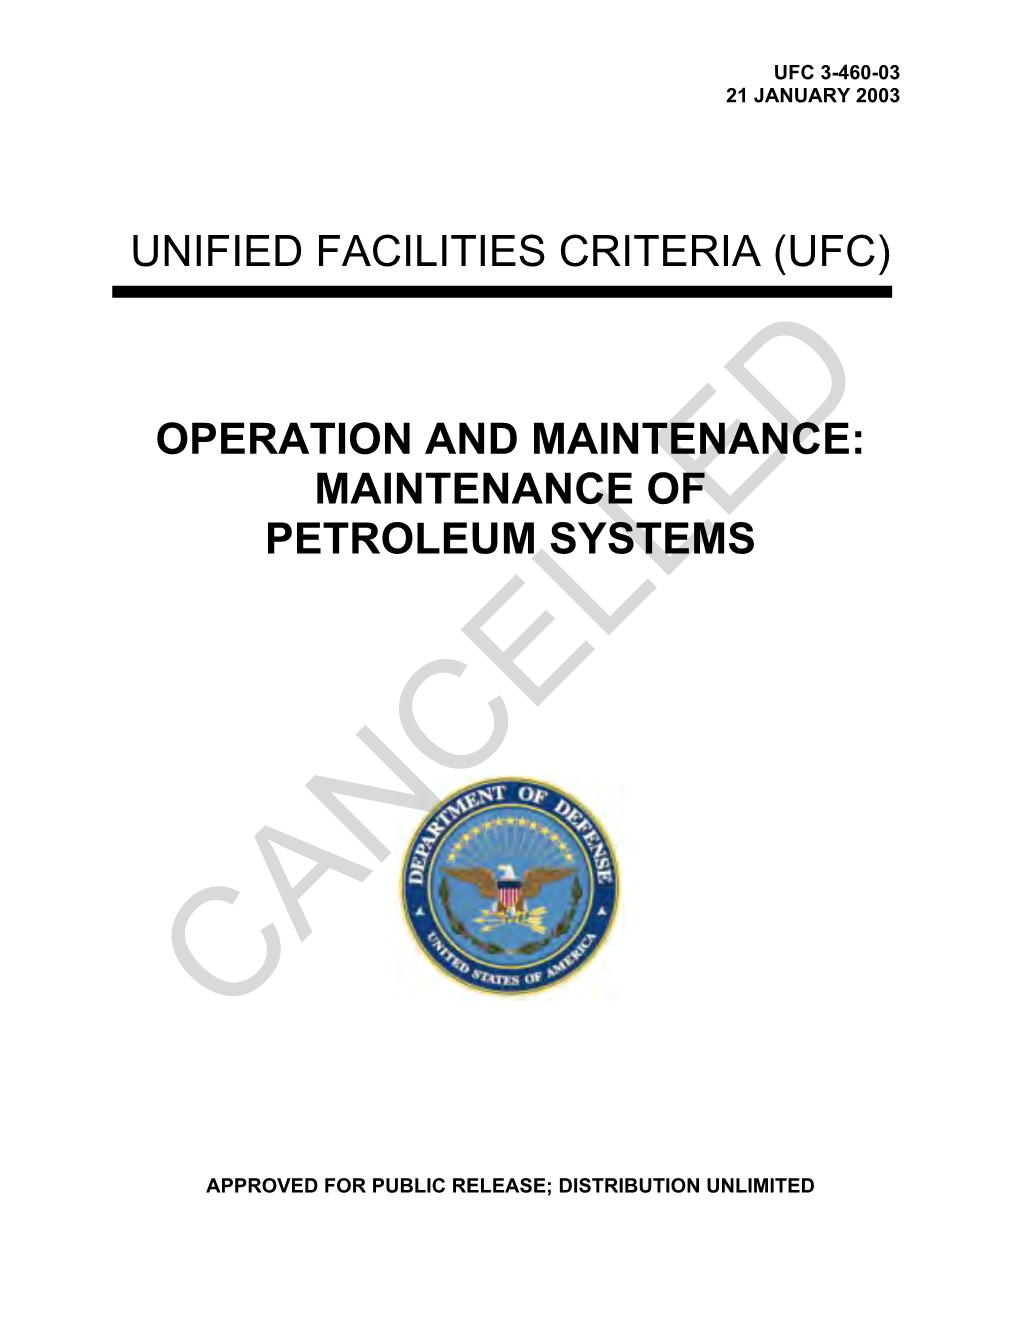 UFC 3-460-03 O&M: Maintenance of Petroleum Systems